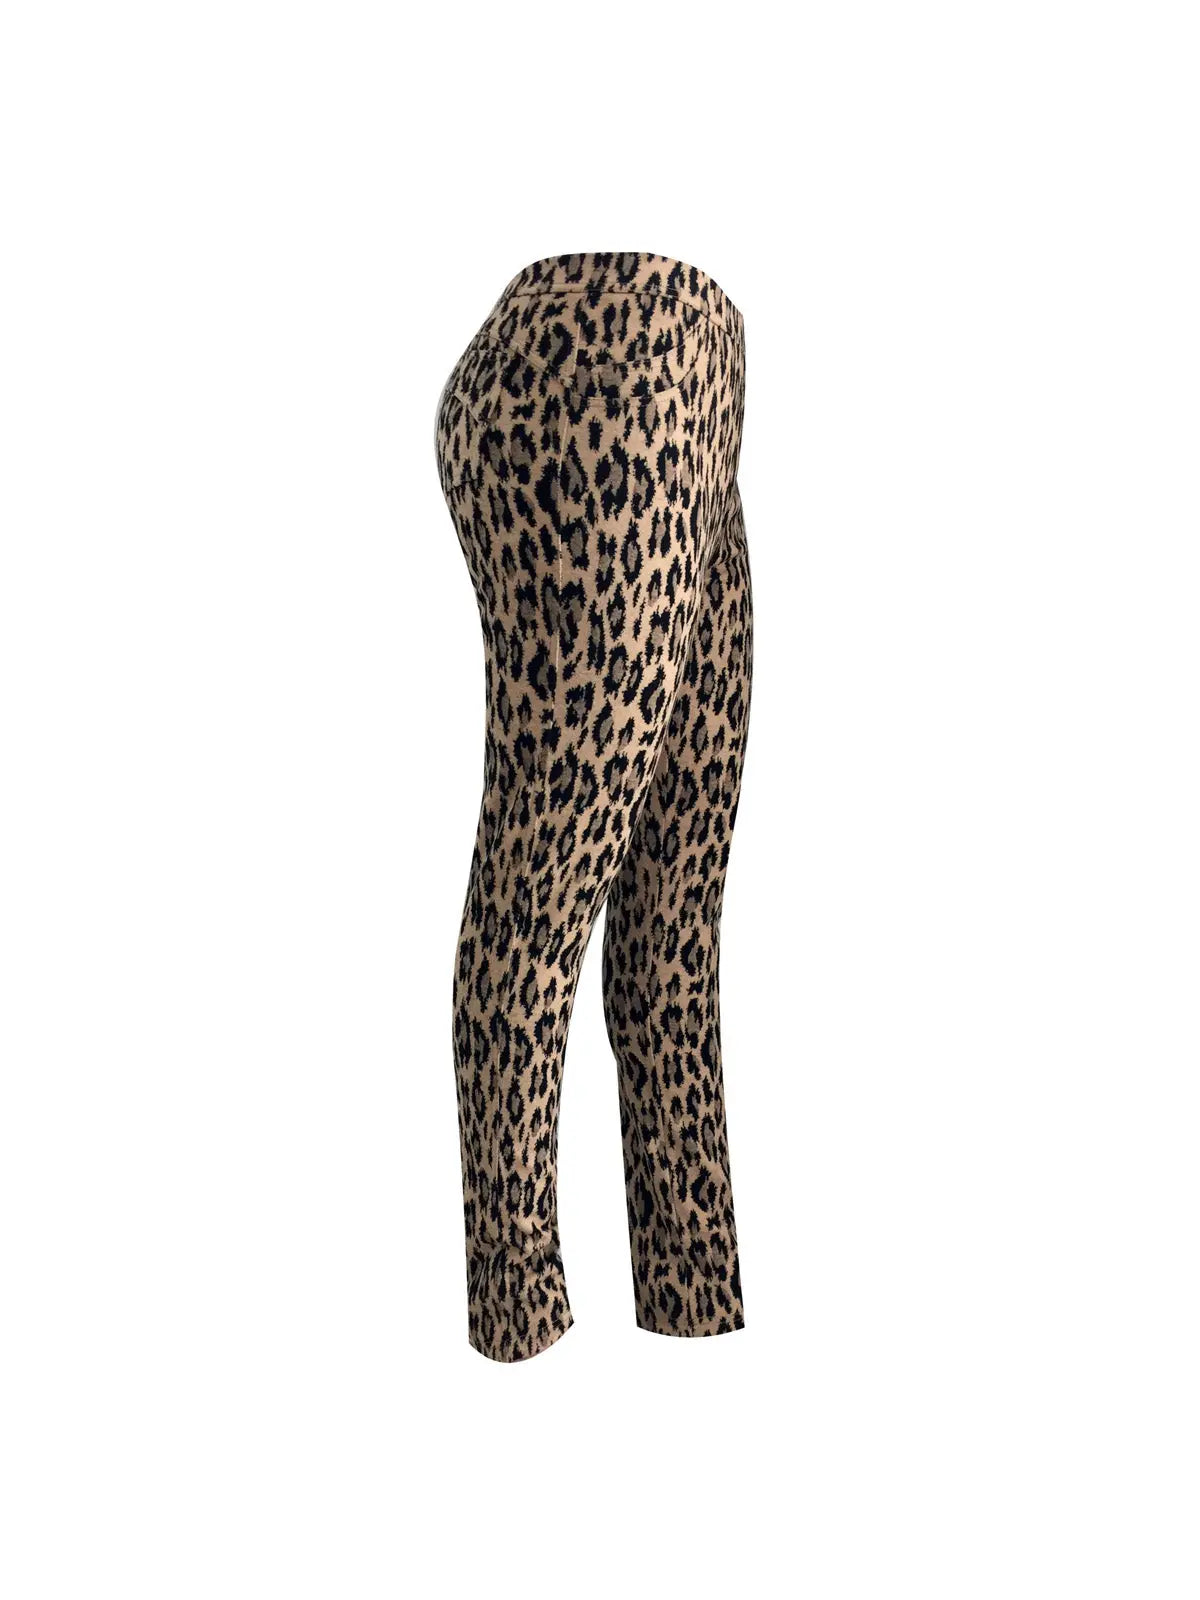 Leopard Leggings Corfu Jeans